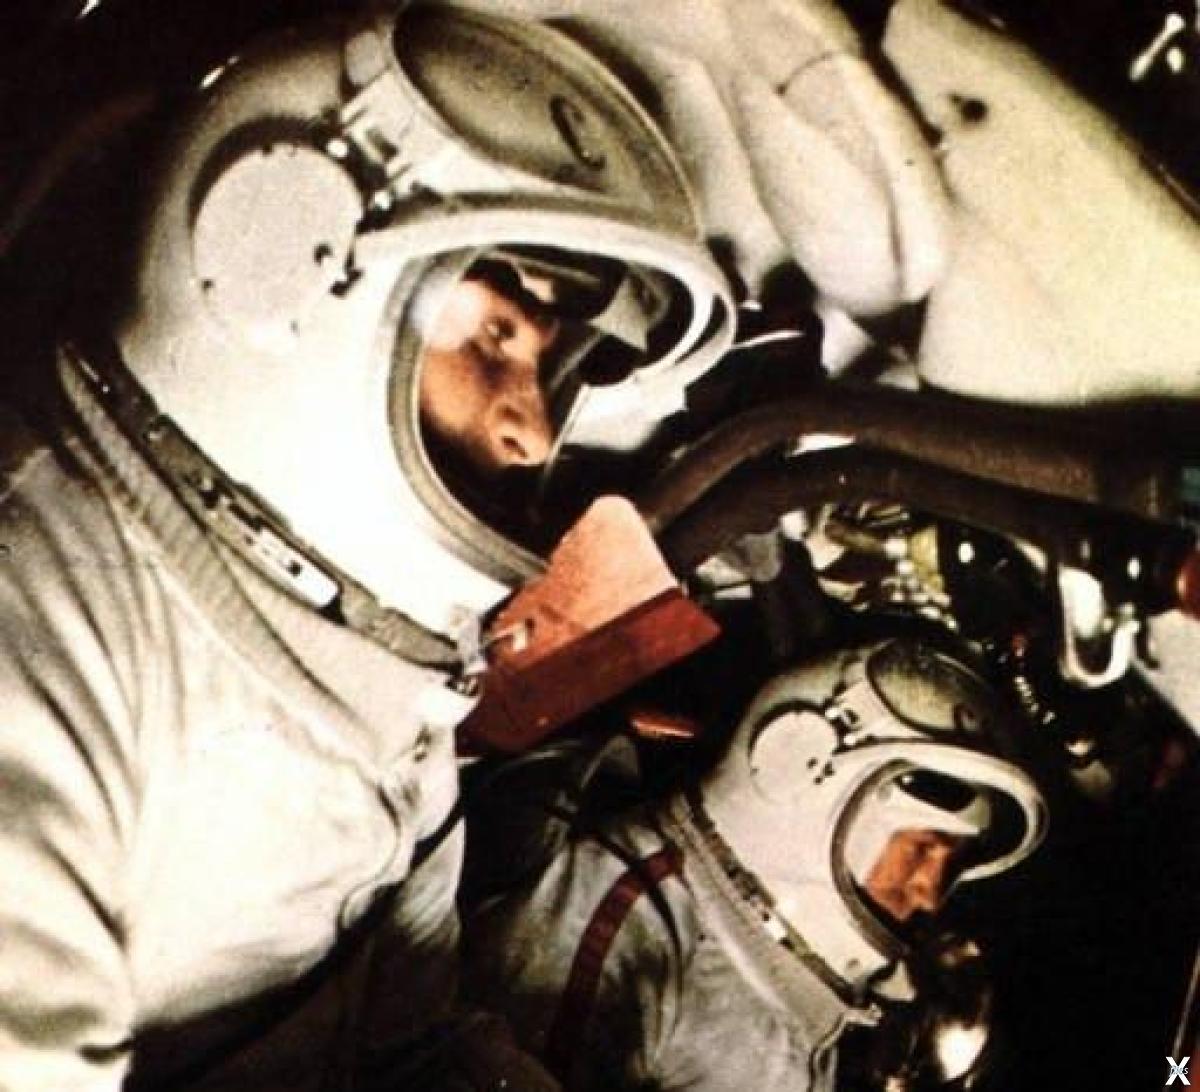 Первый мужчина в открытом космосе. Корабль "Восход-2" с Алексеем Леоновым. Восход 2 космонавты Леонов и Беляев. Экипаж Восход 2 Леонов.